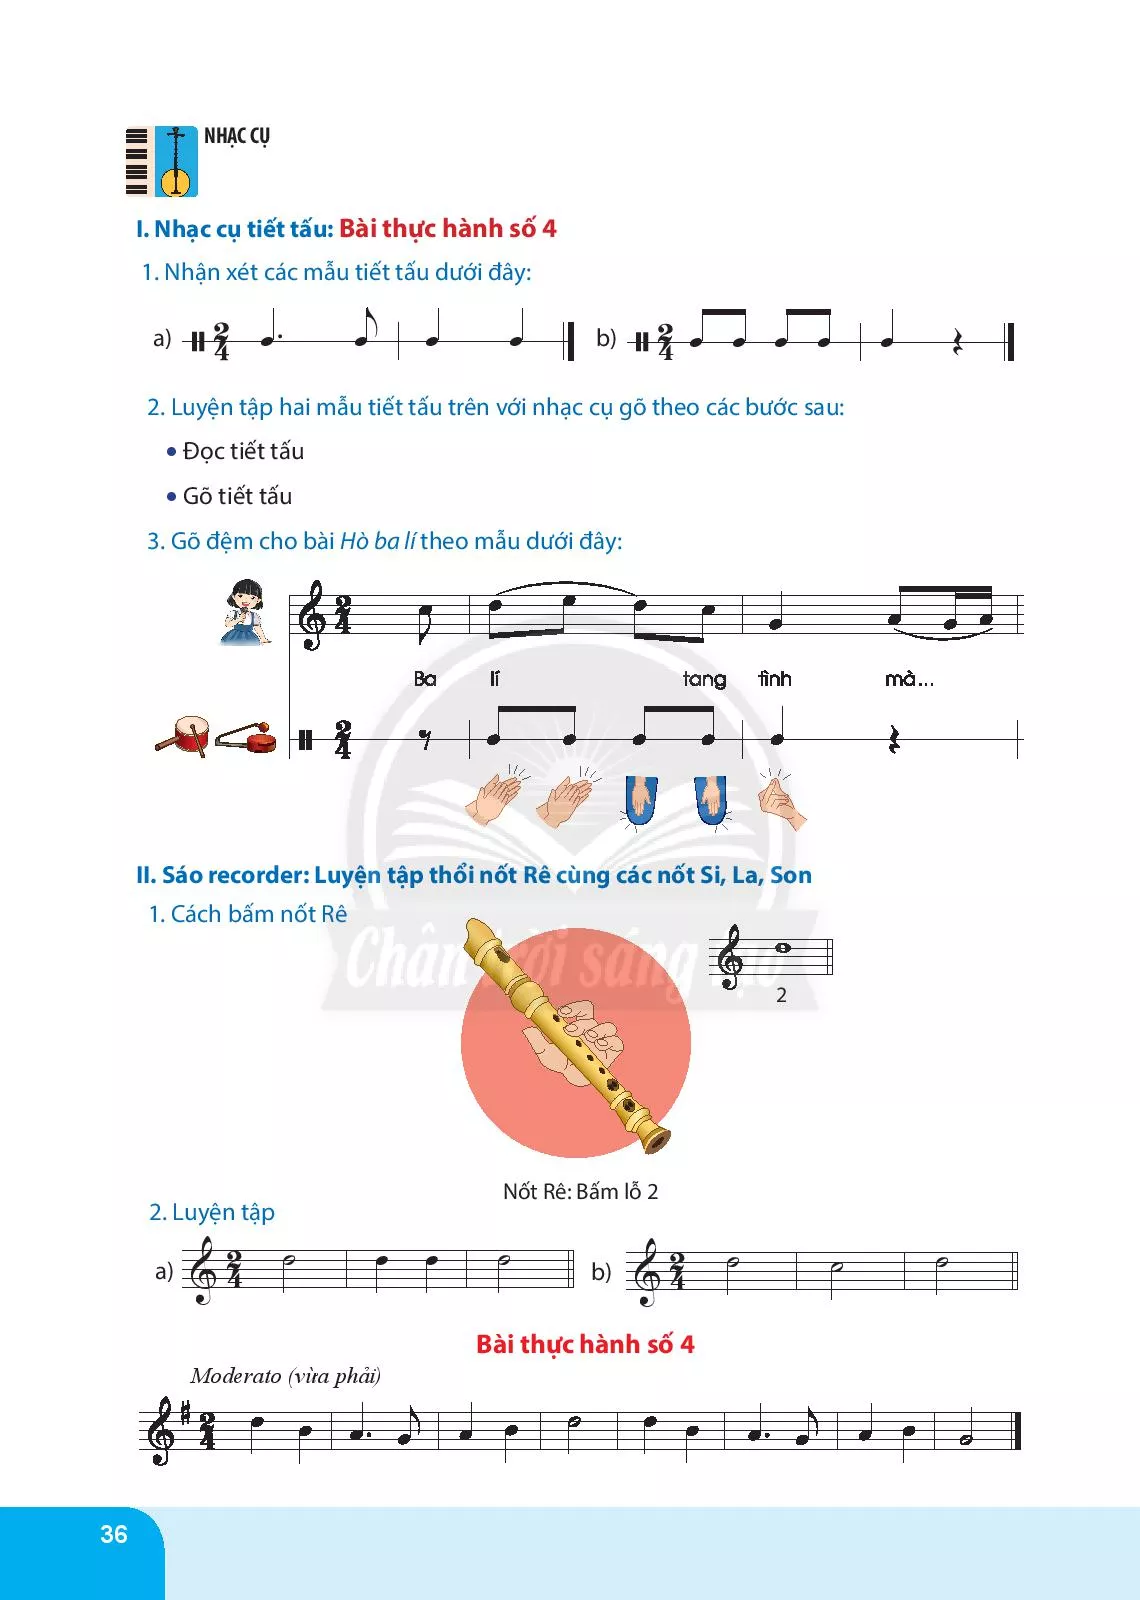 Nhạc cụ tiết tấu: Bài thực hành số 4 Nhạc cụ giai điệu: Bài thực hành số 4 nhạc cụ sáo recorder hoặc kèn phím 